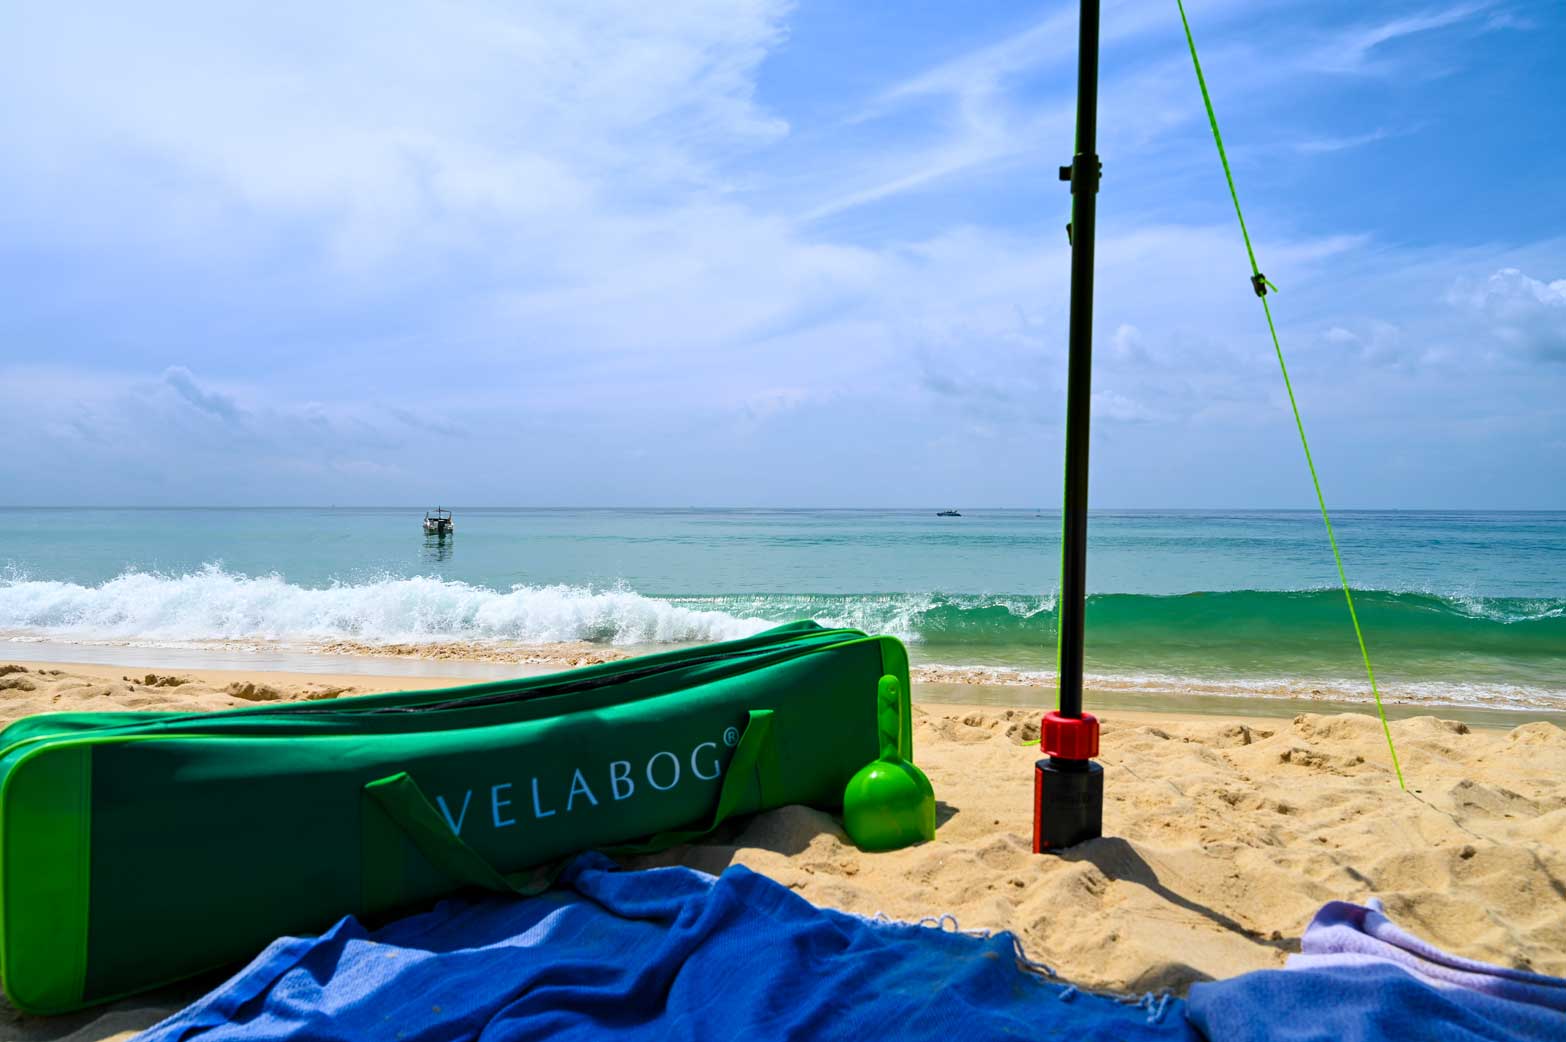 Przestronna, wytrzymała zielona torba Velabog. Dwie komory: jedna 6 cm i druga 11 cm szerokości. Długość 105 cm, szerokość całkowita 17 cm, wysokość 22 cm. Dużo miejsca na wszystko, co chcesz zabrać na plażę.